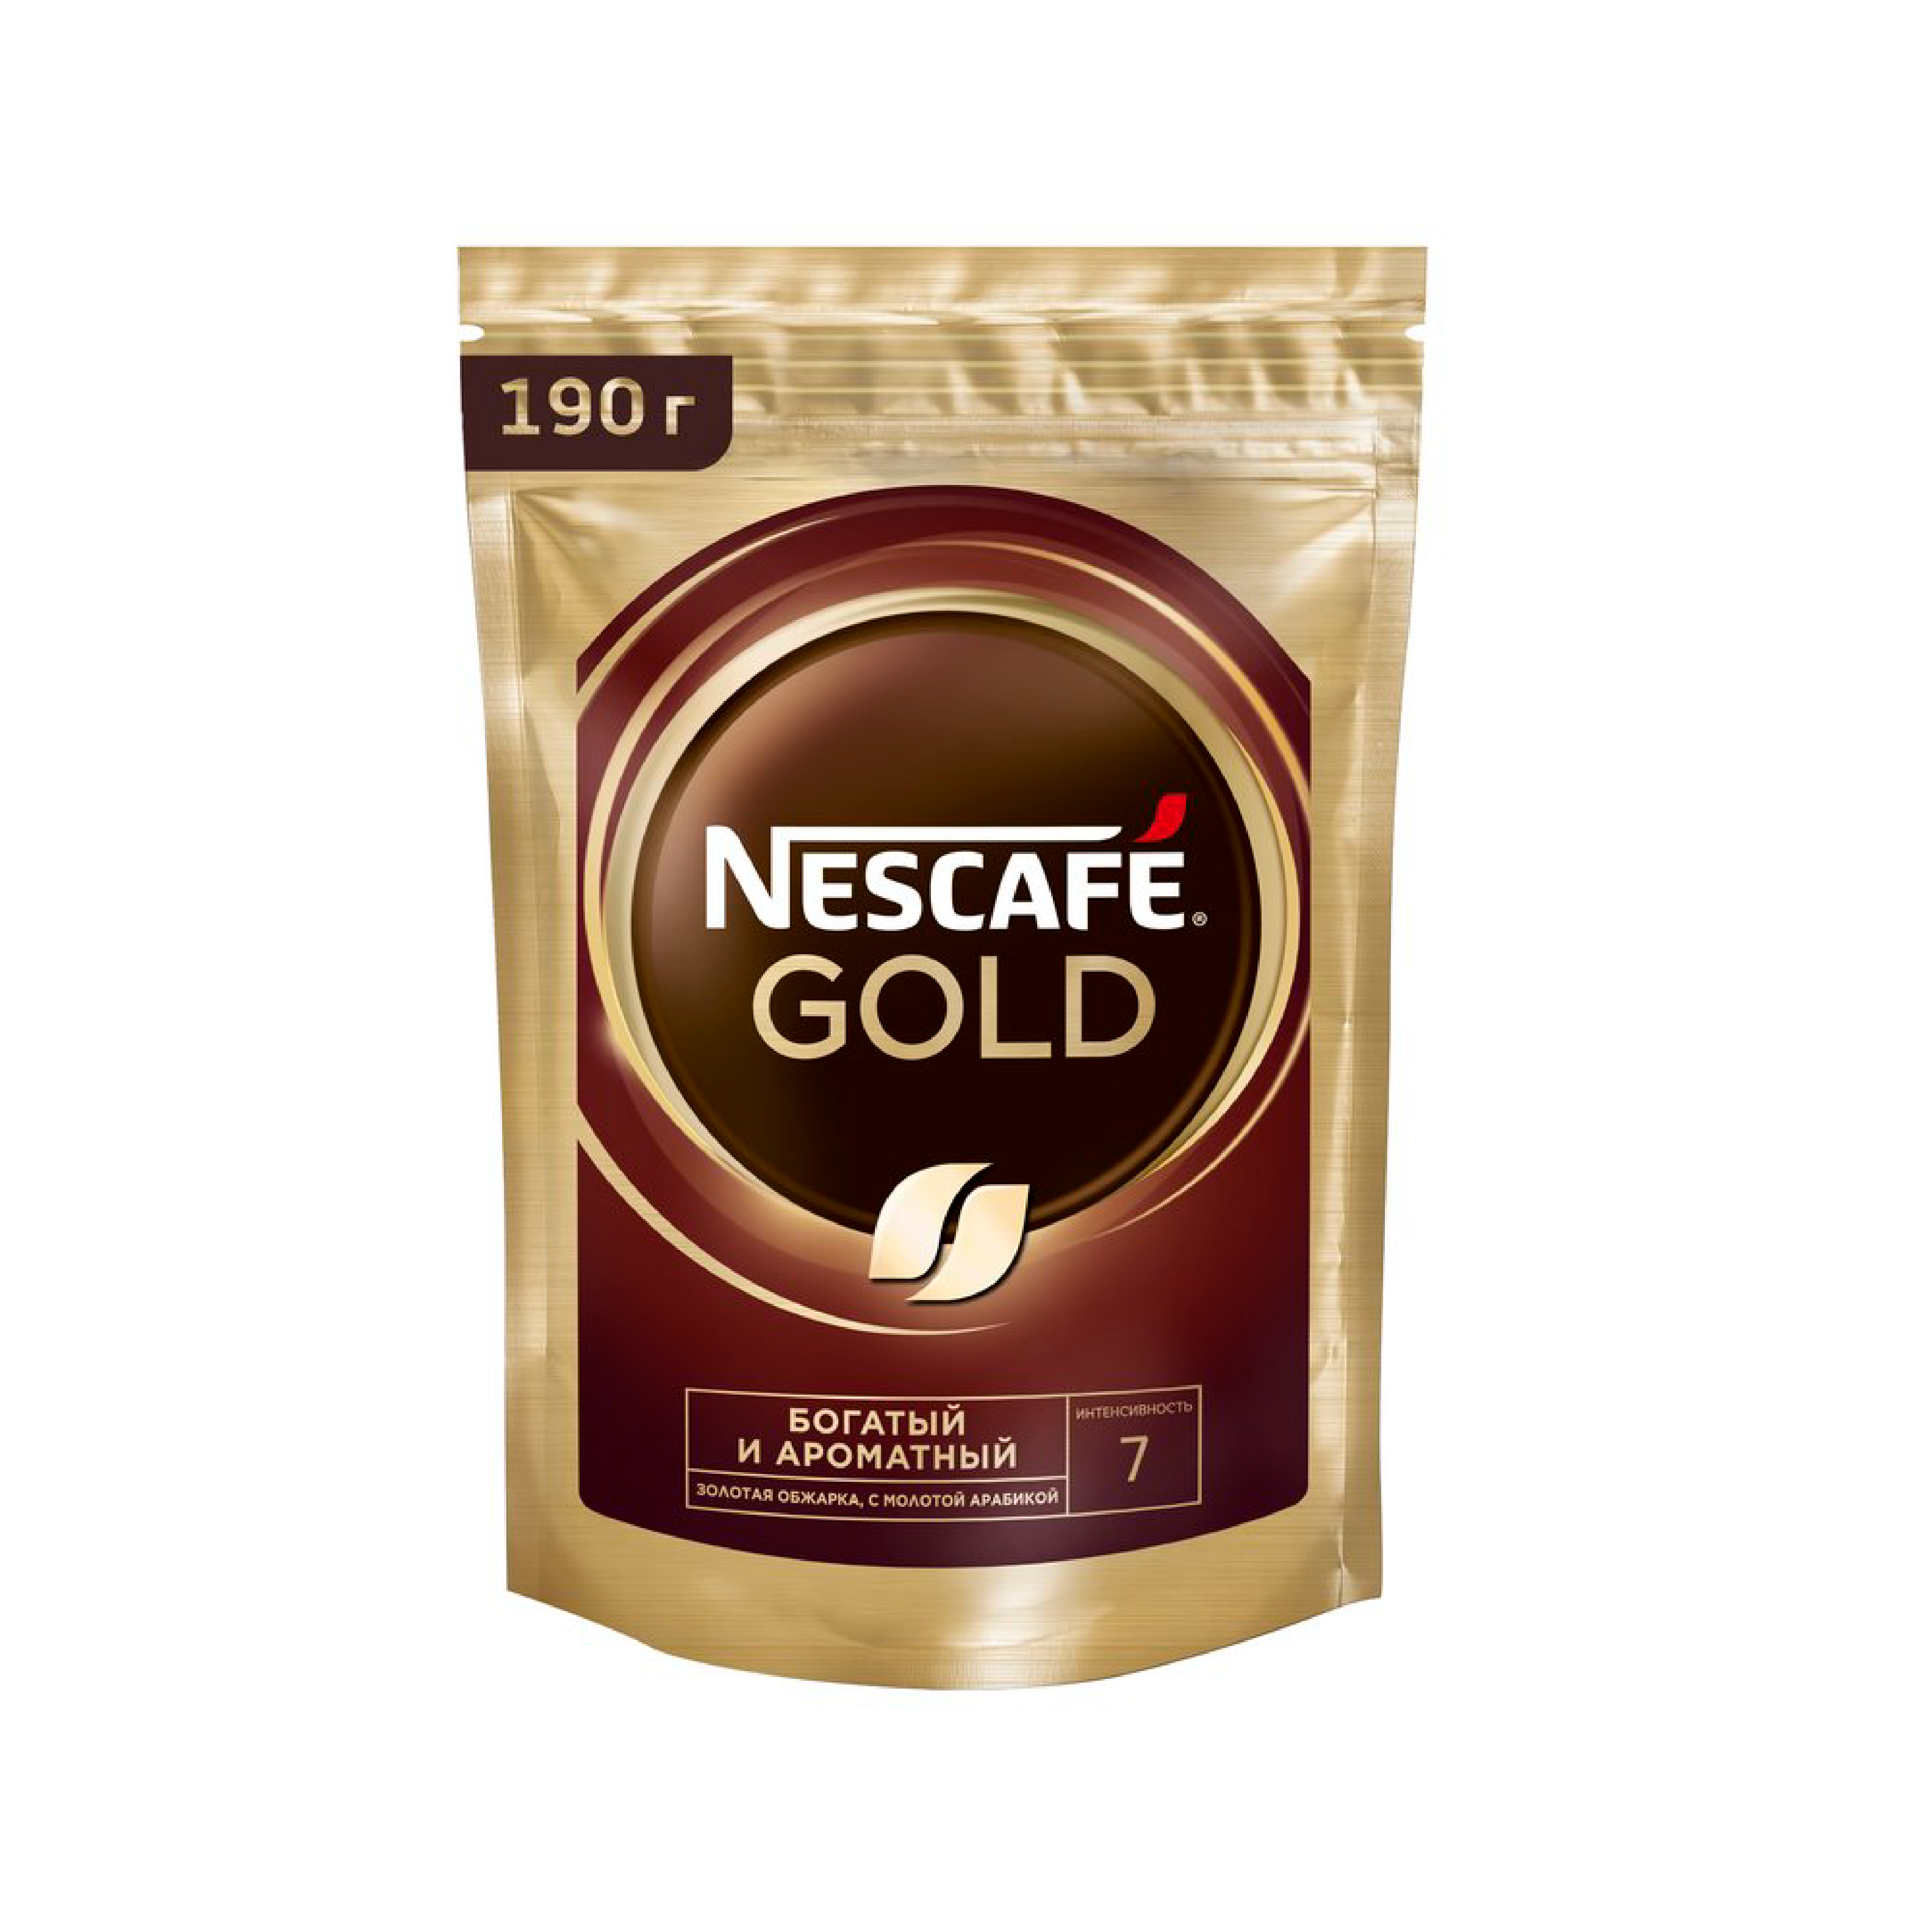 Nescafe gold 320. Кофе Нескафе Голд 900 гр. Nescafe кофе Gold 900г.. Кофе Нескафе Голд 900гр м.у. Кофе растворимый Nescafe Gold 900 гр.